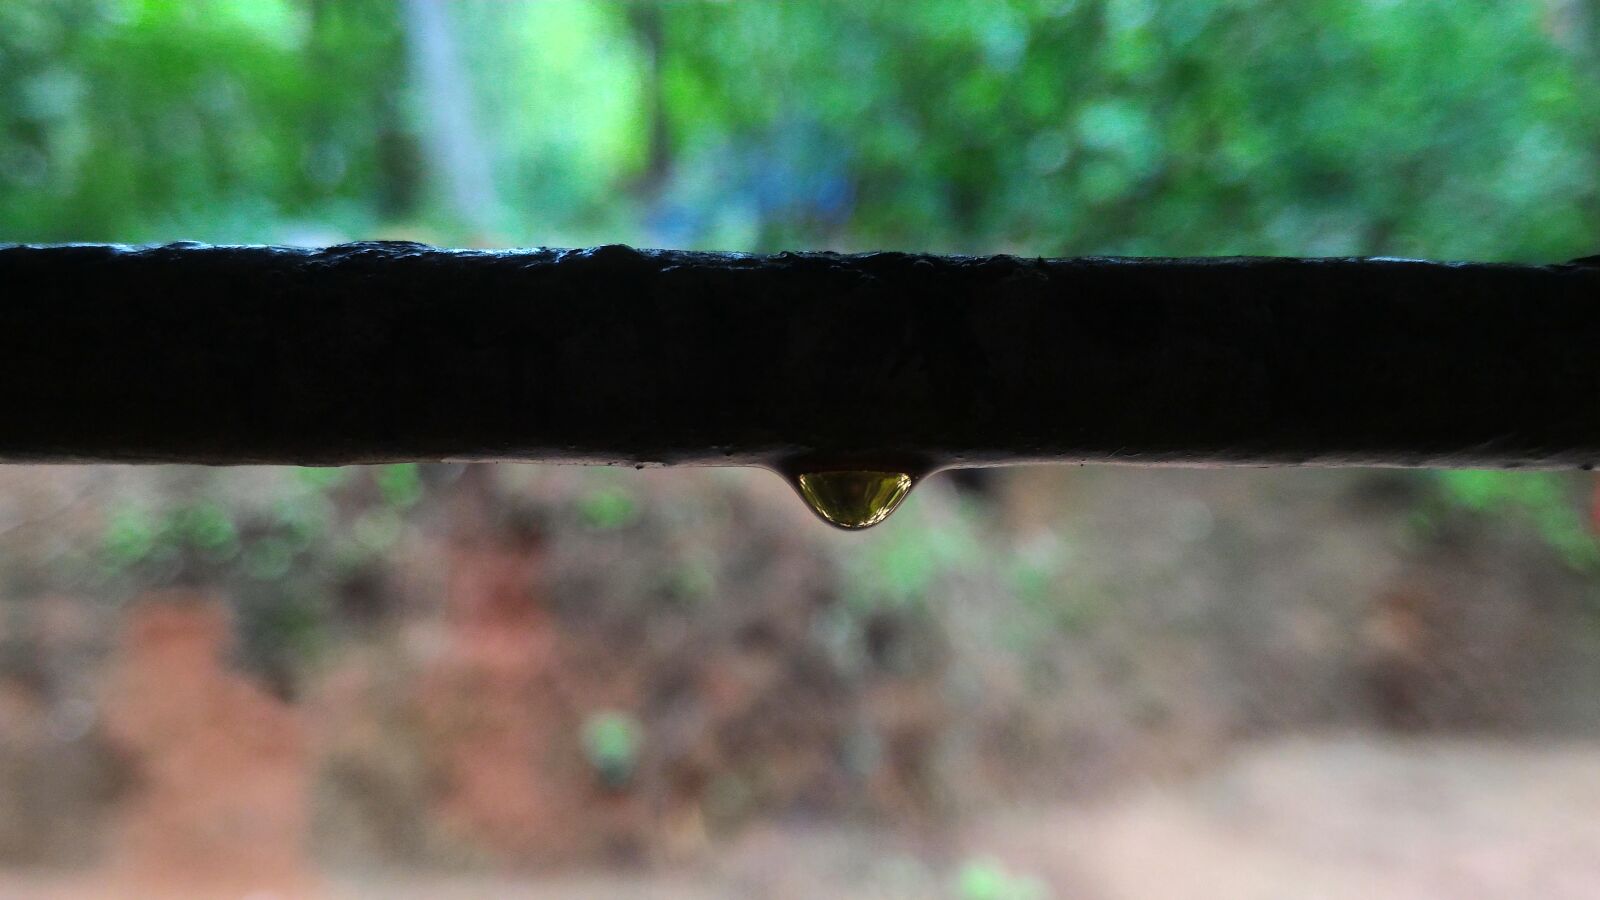 ASUS Z00AD sample photo. Drop of rain, natural photography